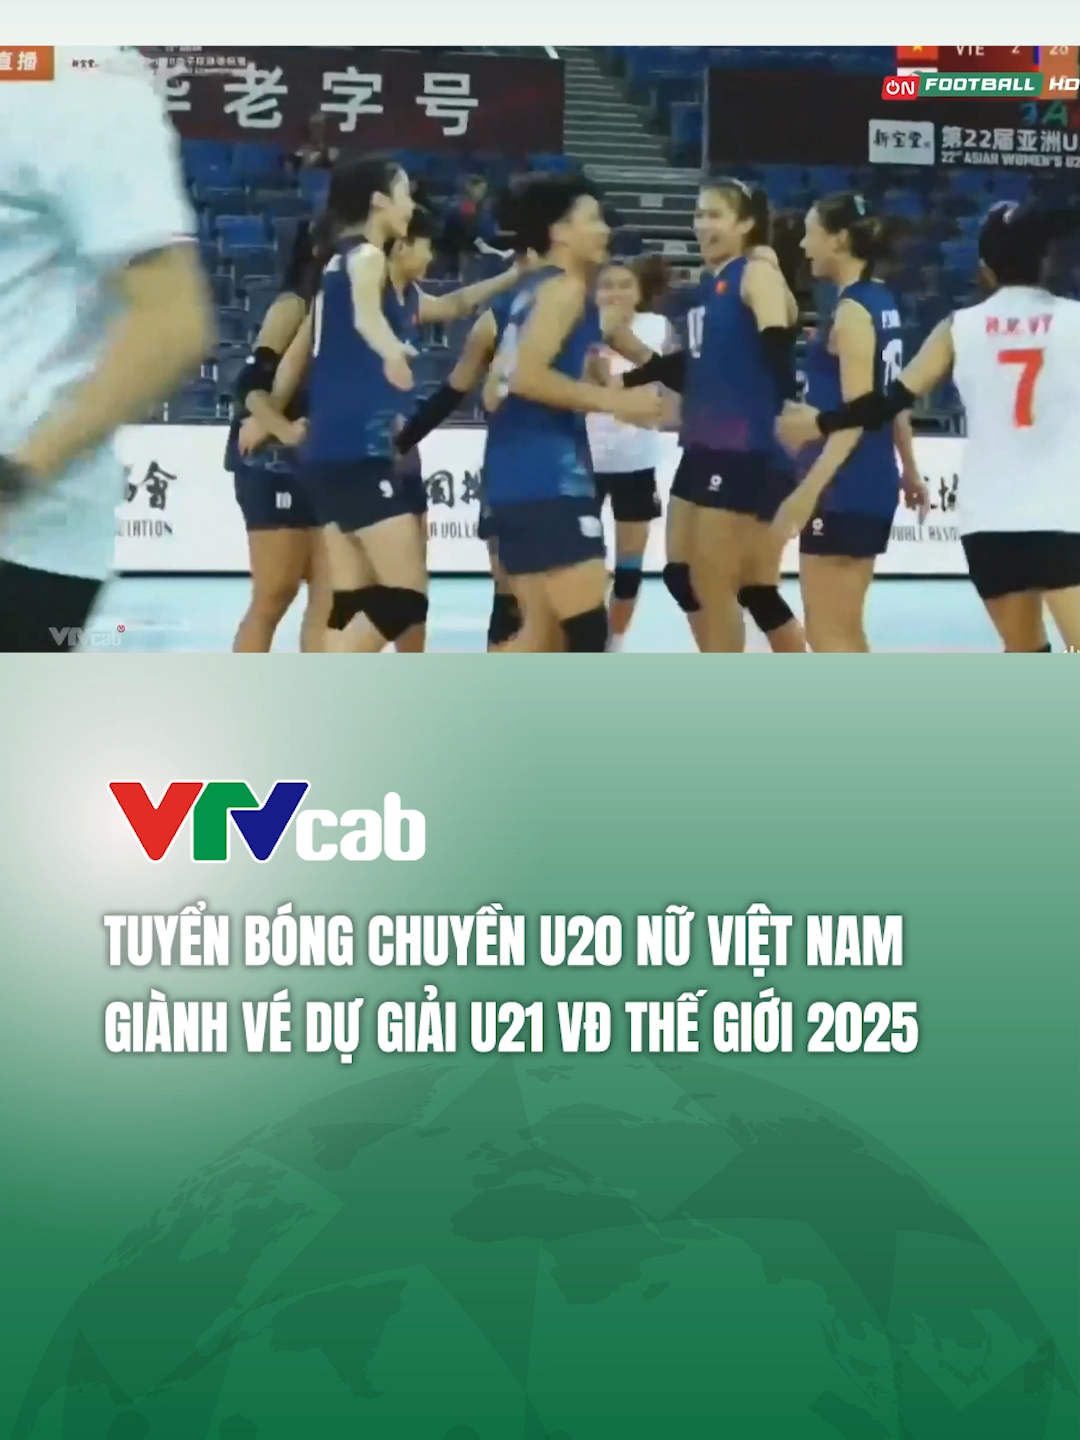 Đánh bại ĐT Đài Bắc Trung Hoa, ĐT bóng chuyền U20 nữ Việt Nam giành vé dự giải U21 VĐTG 2025 #vtvcab #bongchuyenu #tiktoknews